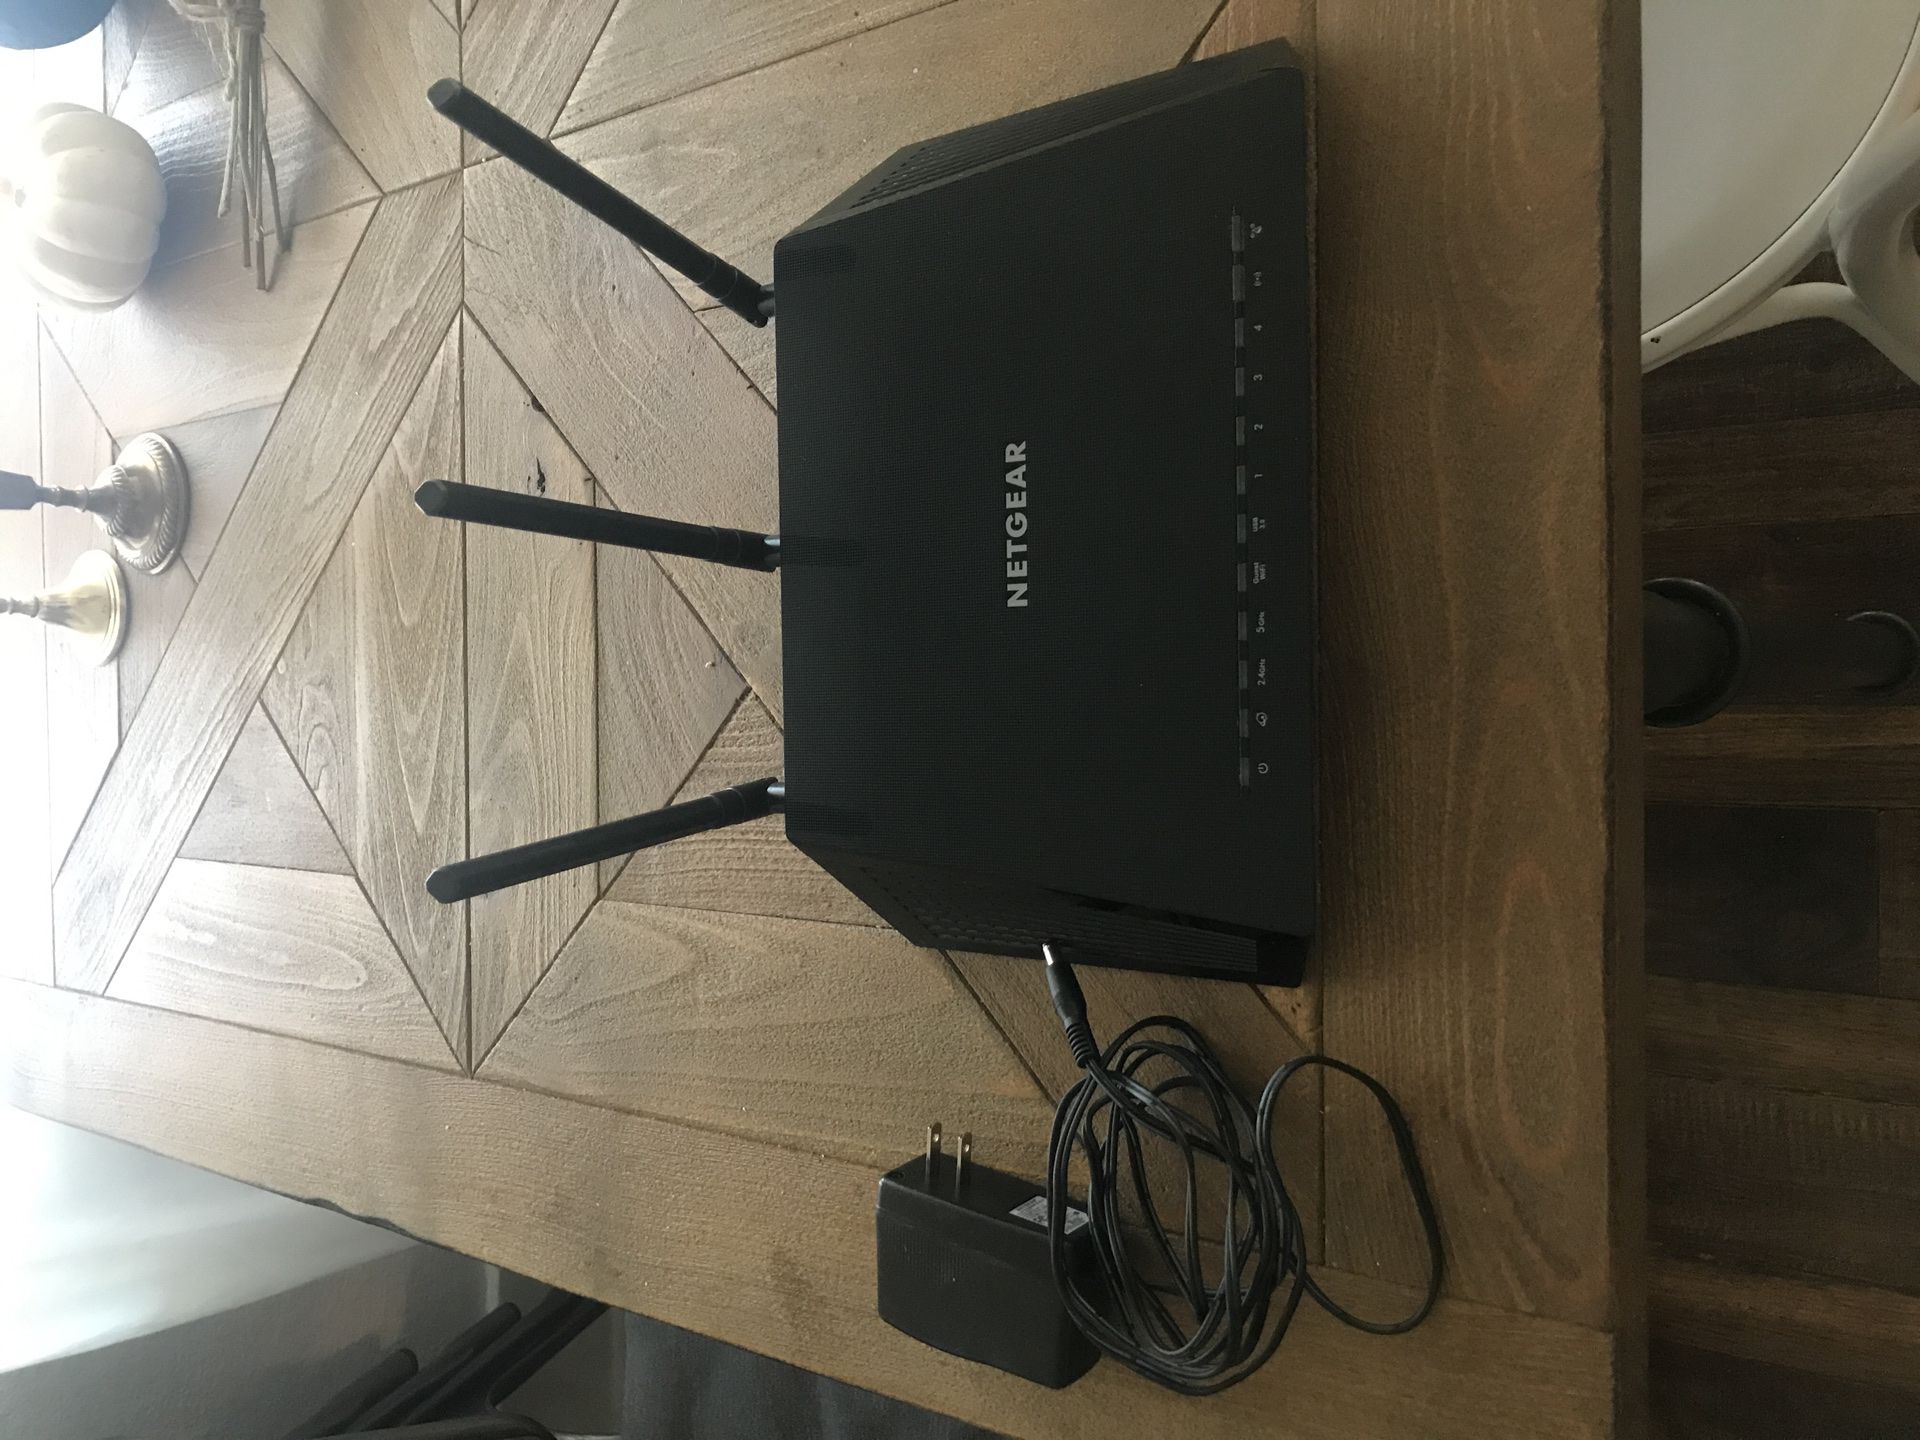 Nextgear nighthawk smart wifi router